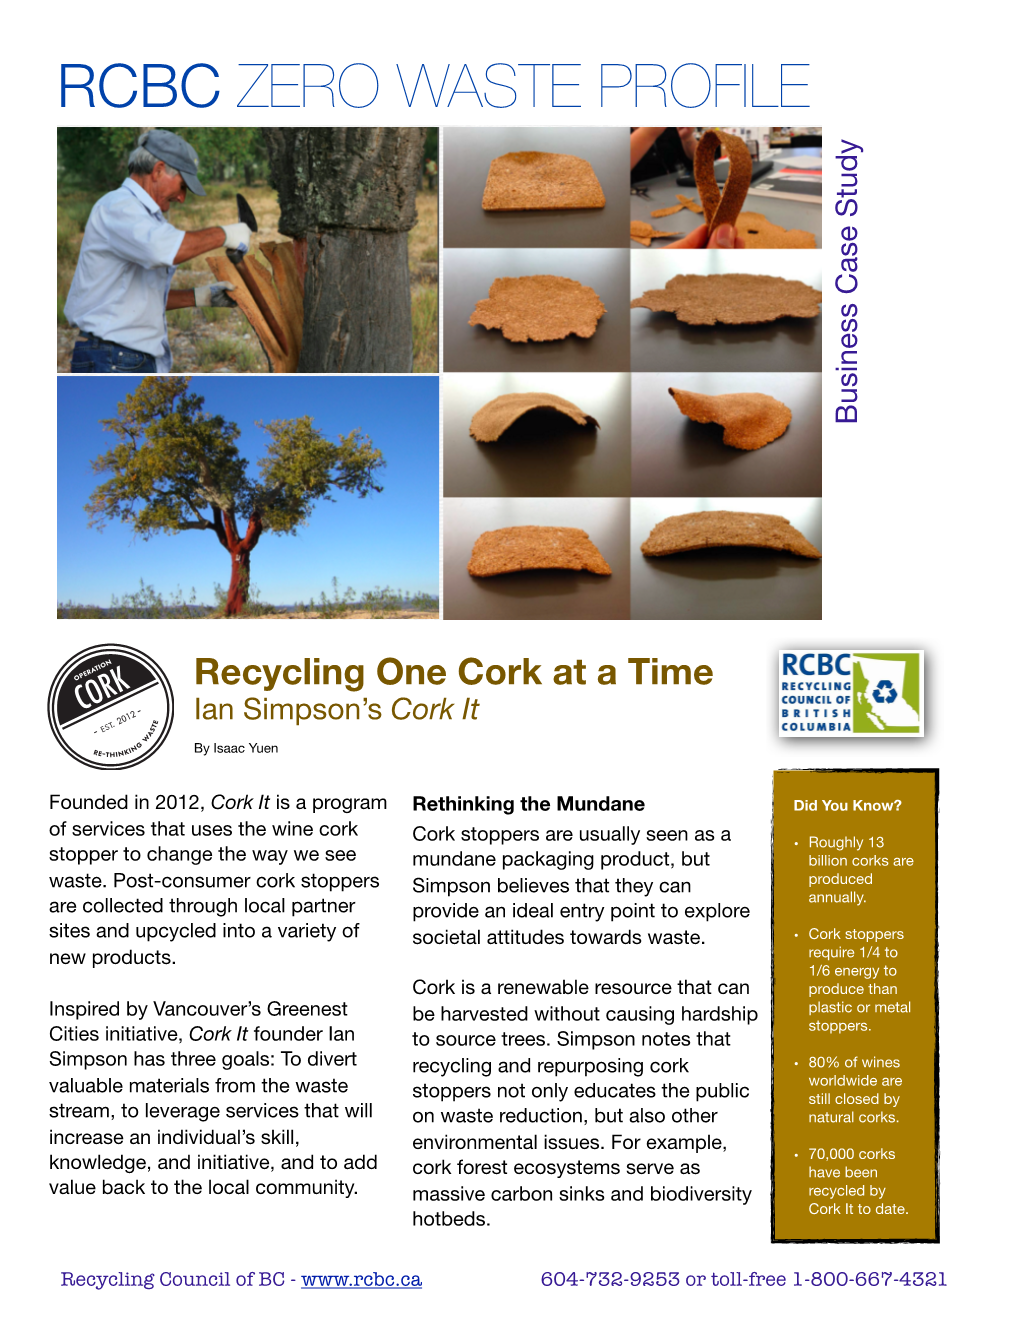 RCBC Zero Waste Profile: Cork-It!